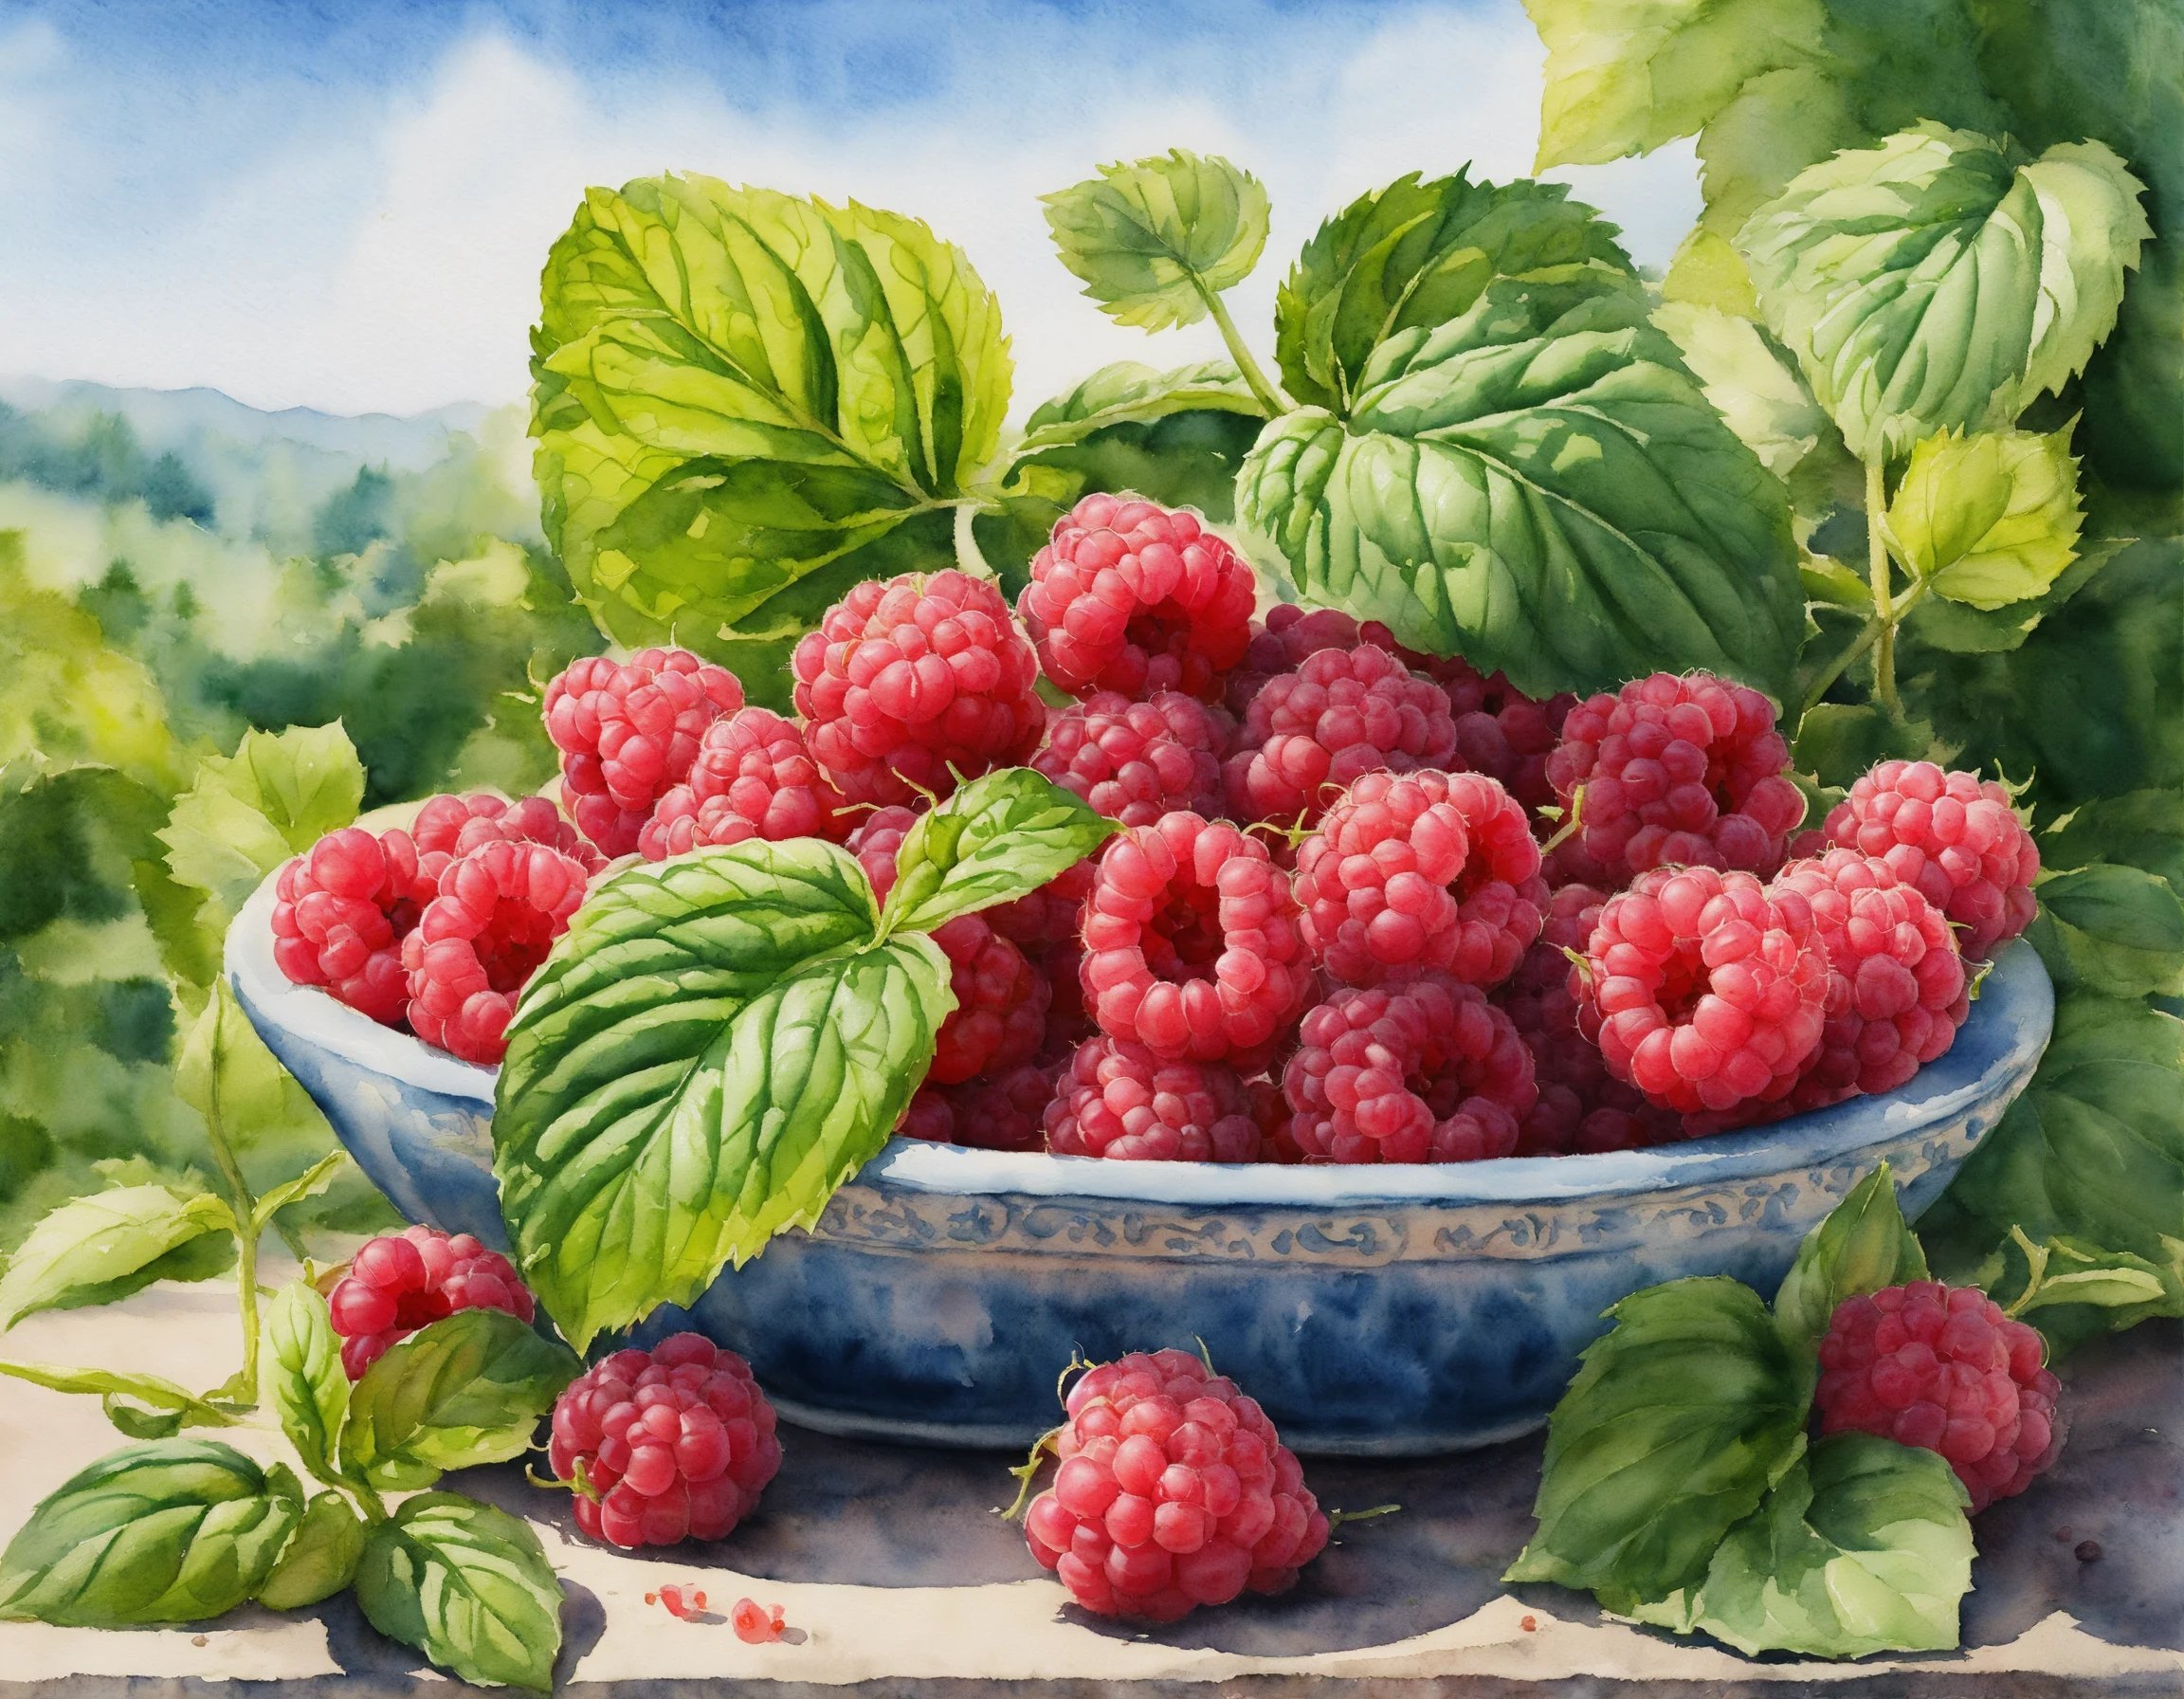 Raspberries-and-Basil Recette de Gaufre Arc-en-ciel à la Framboise et au Basilic